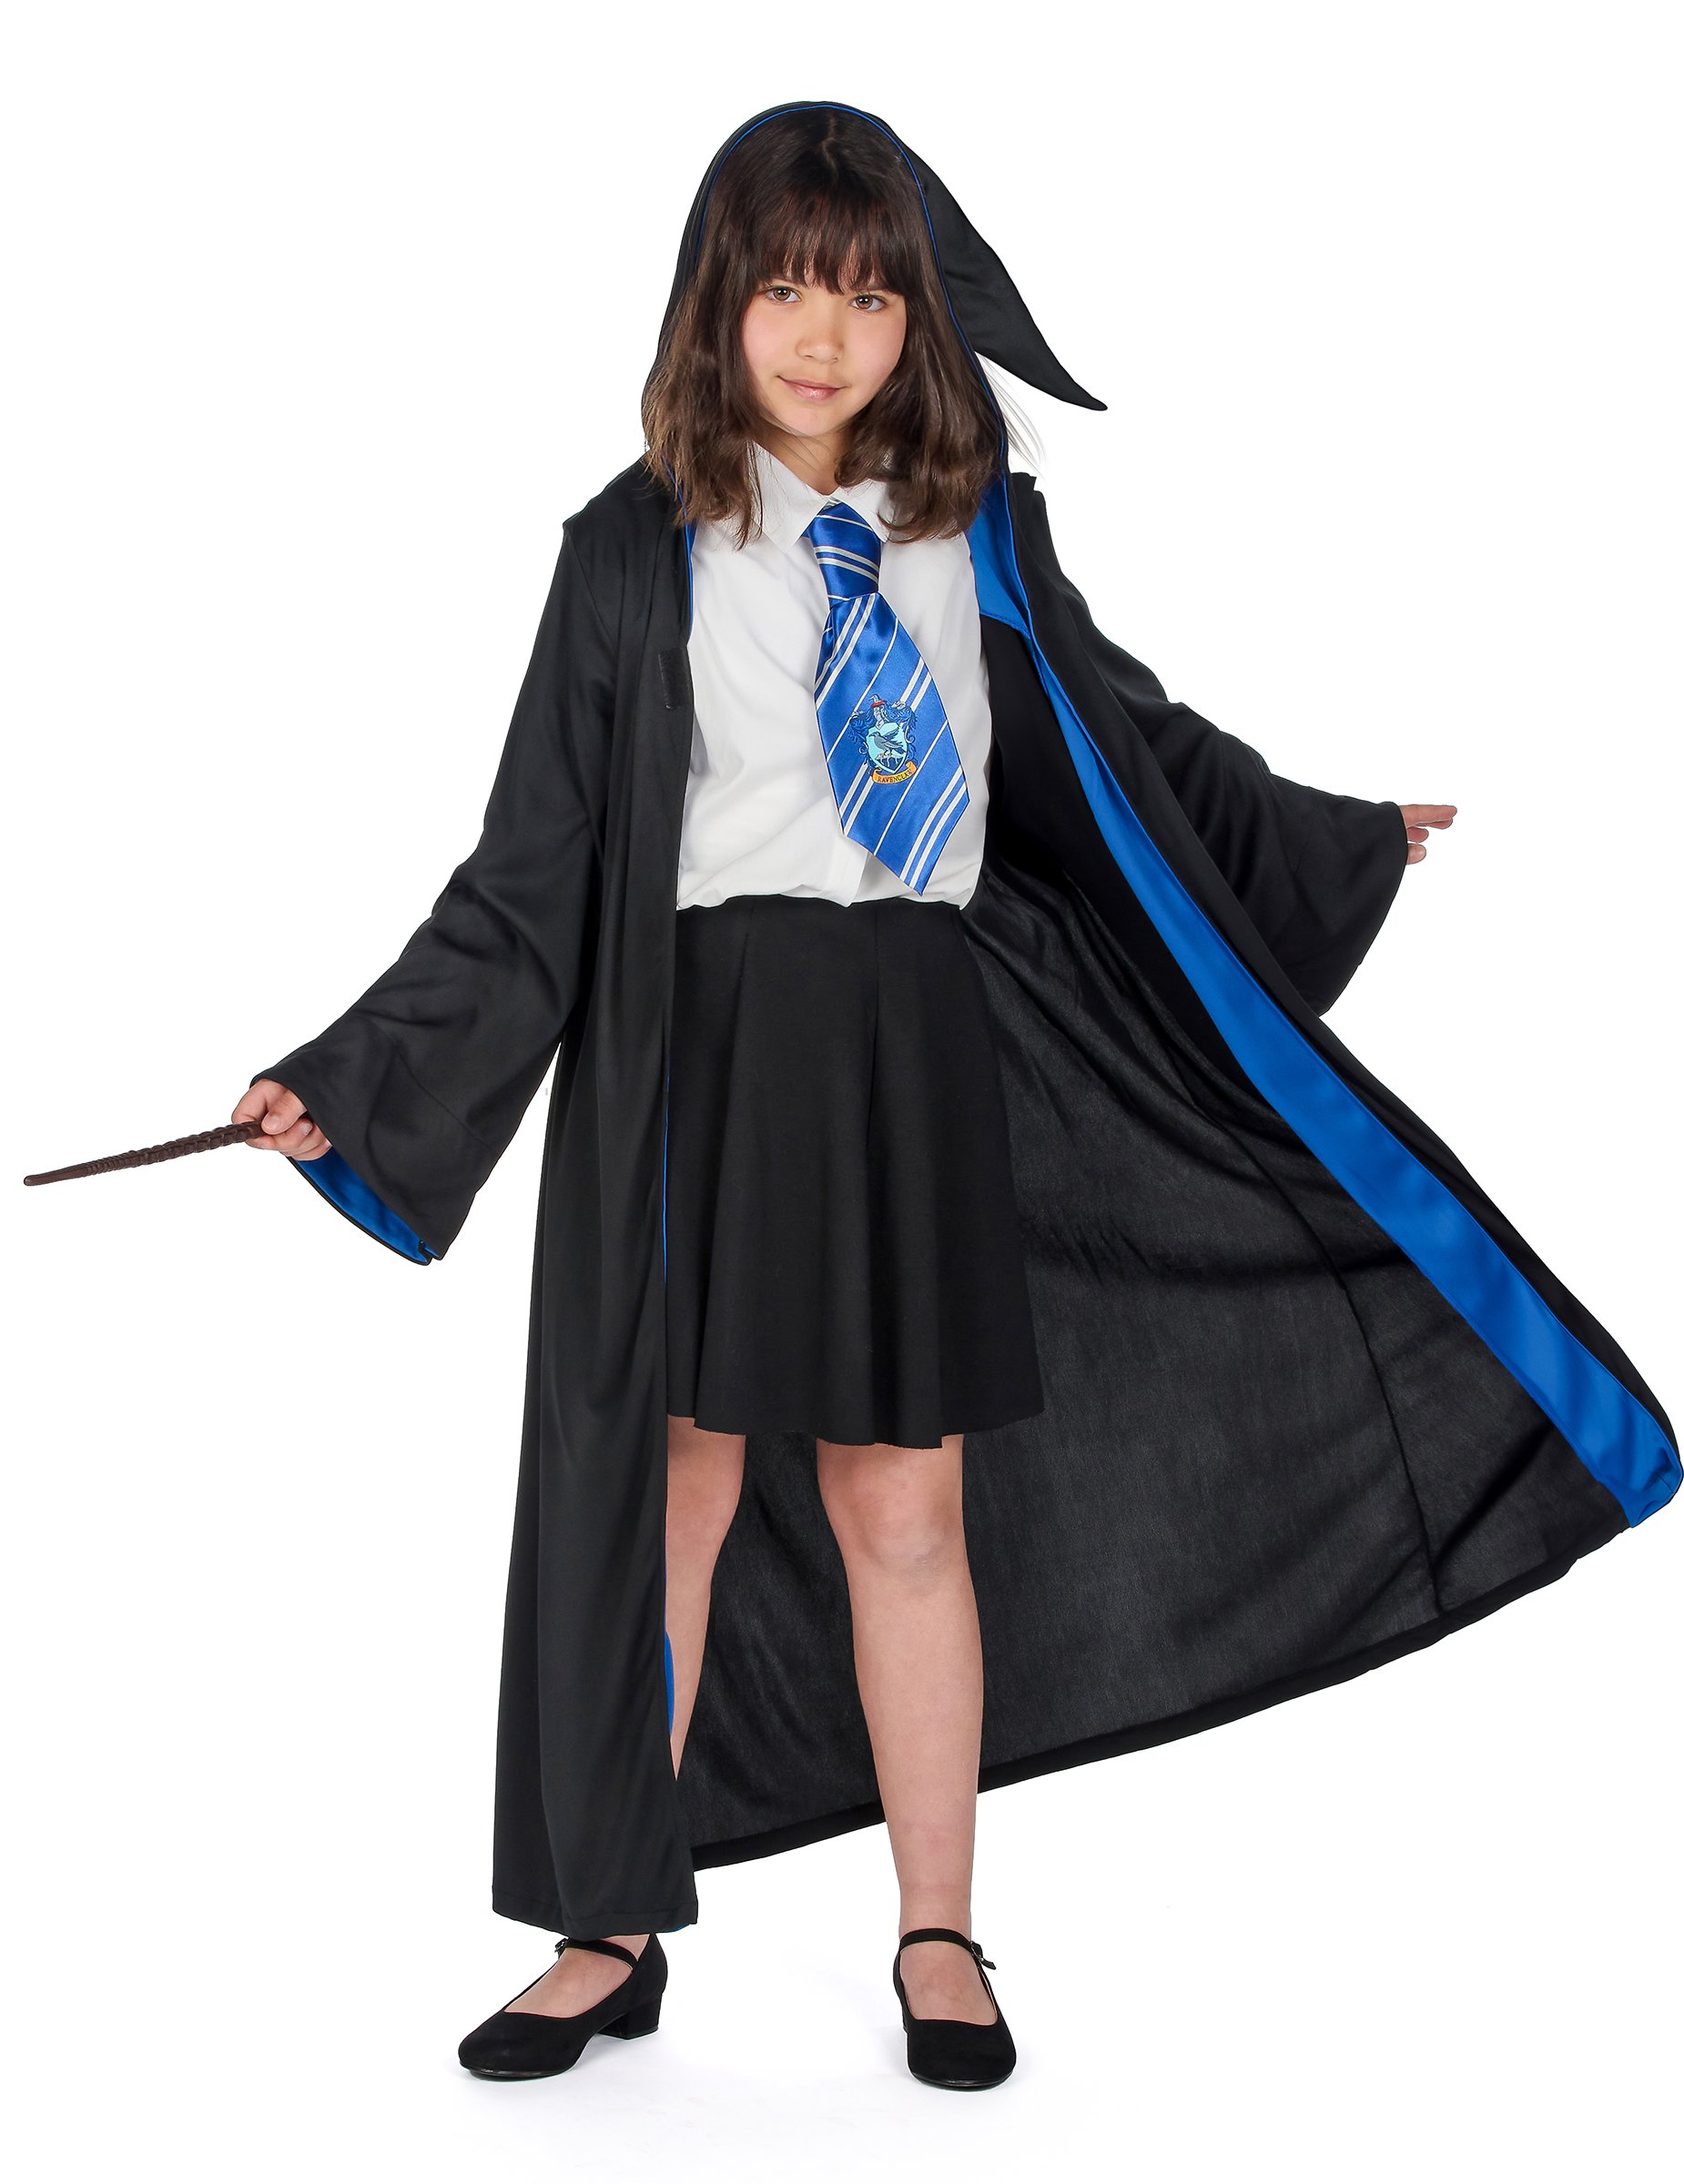 Offizielles Ravenclaw-Kostüm für Kinder Harry Potter schwarz-blau-weiss von RUBIES FRANCE